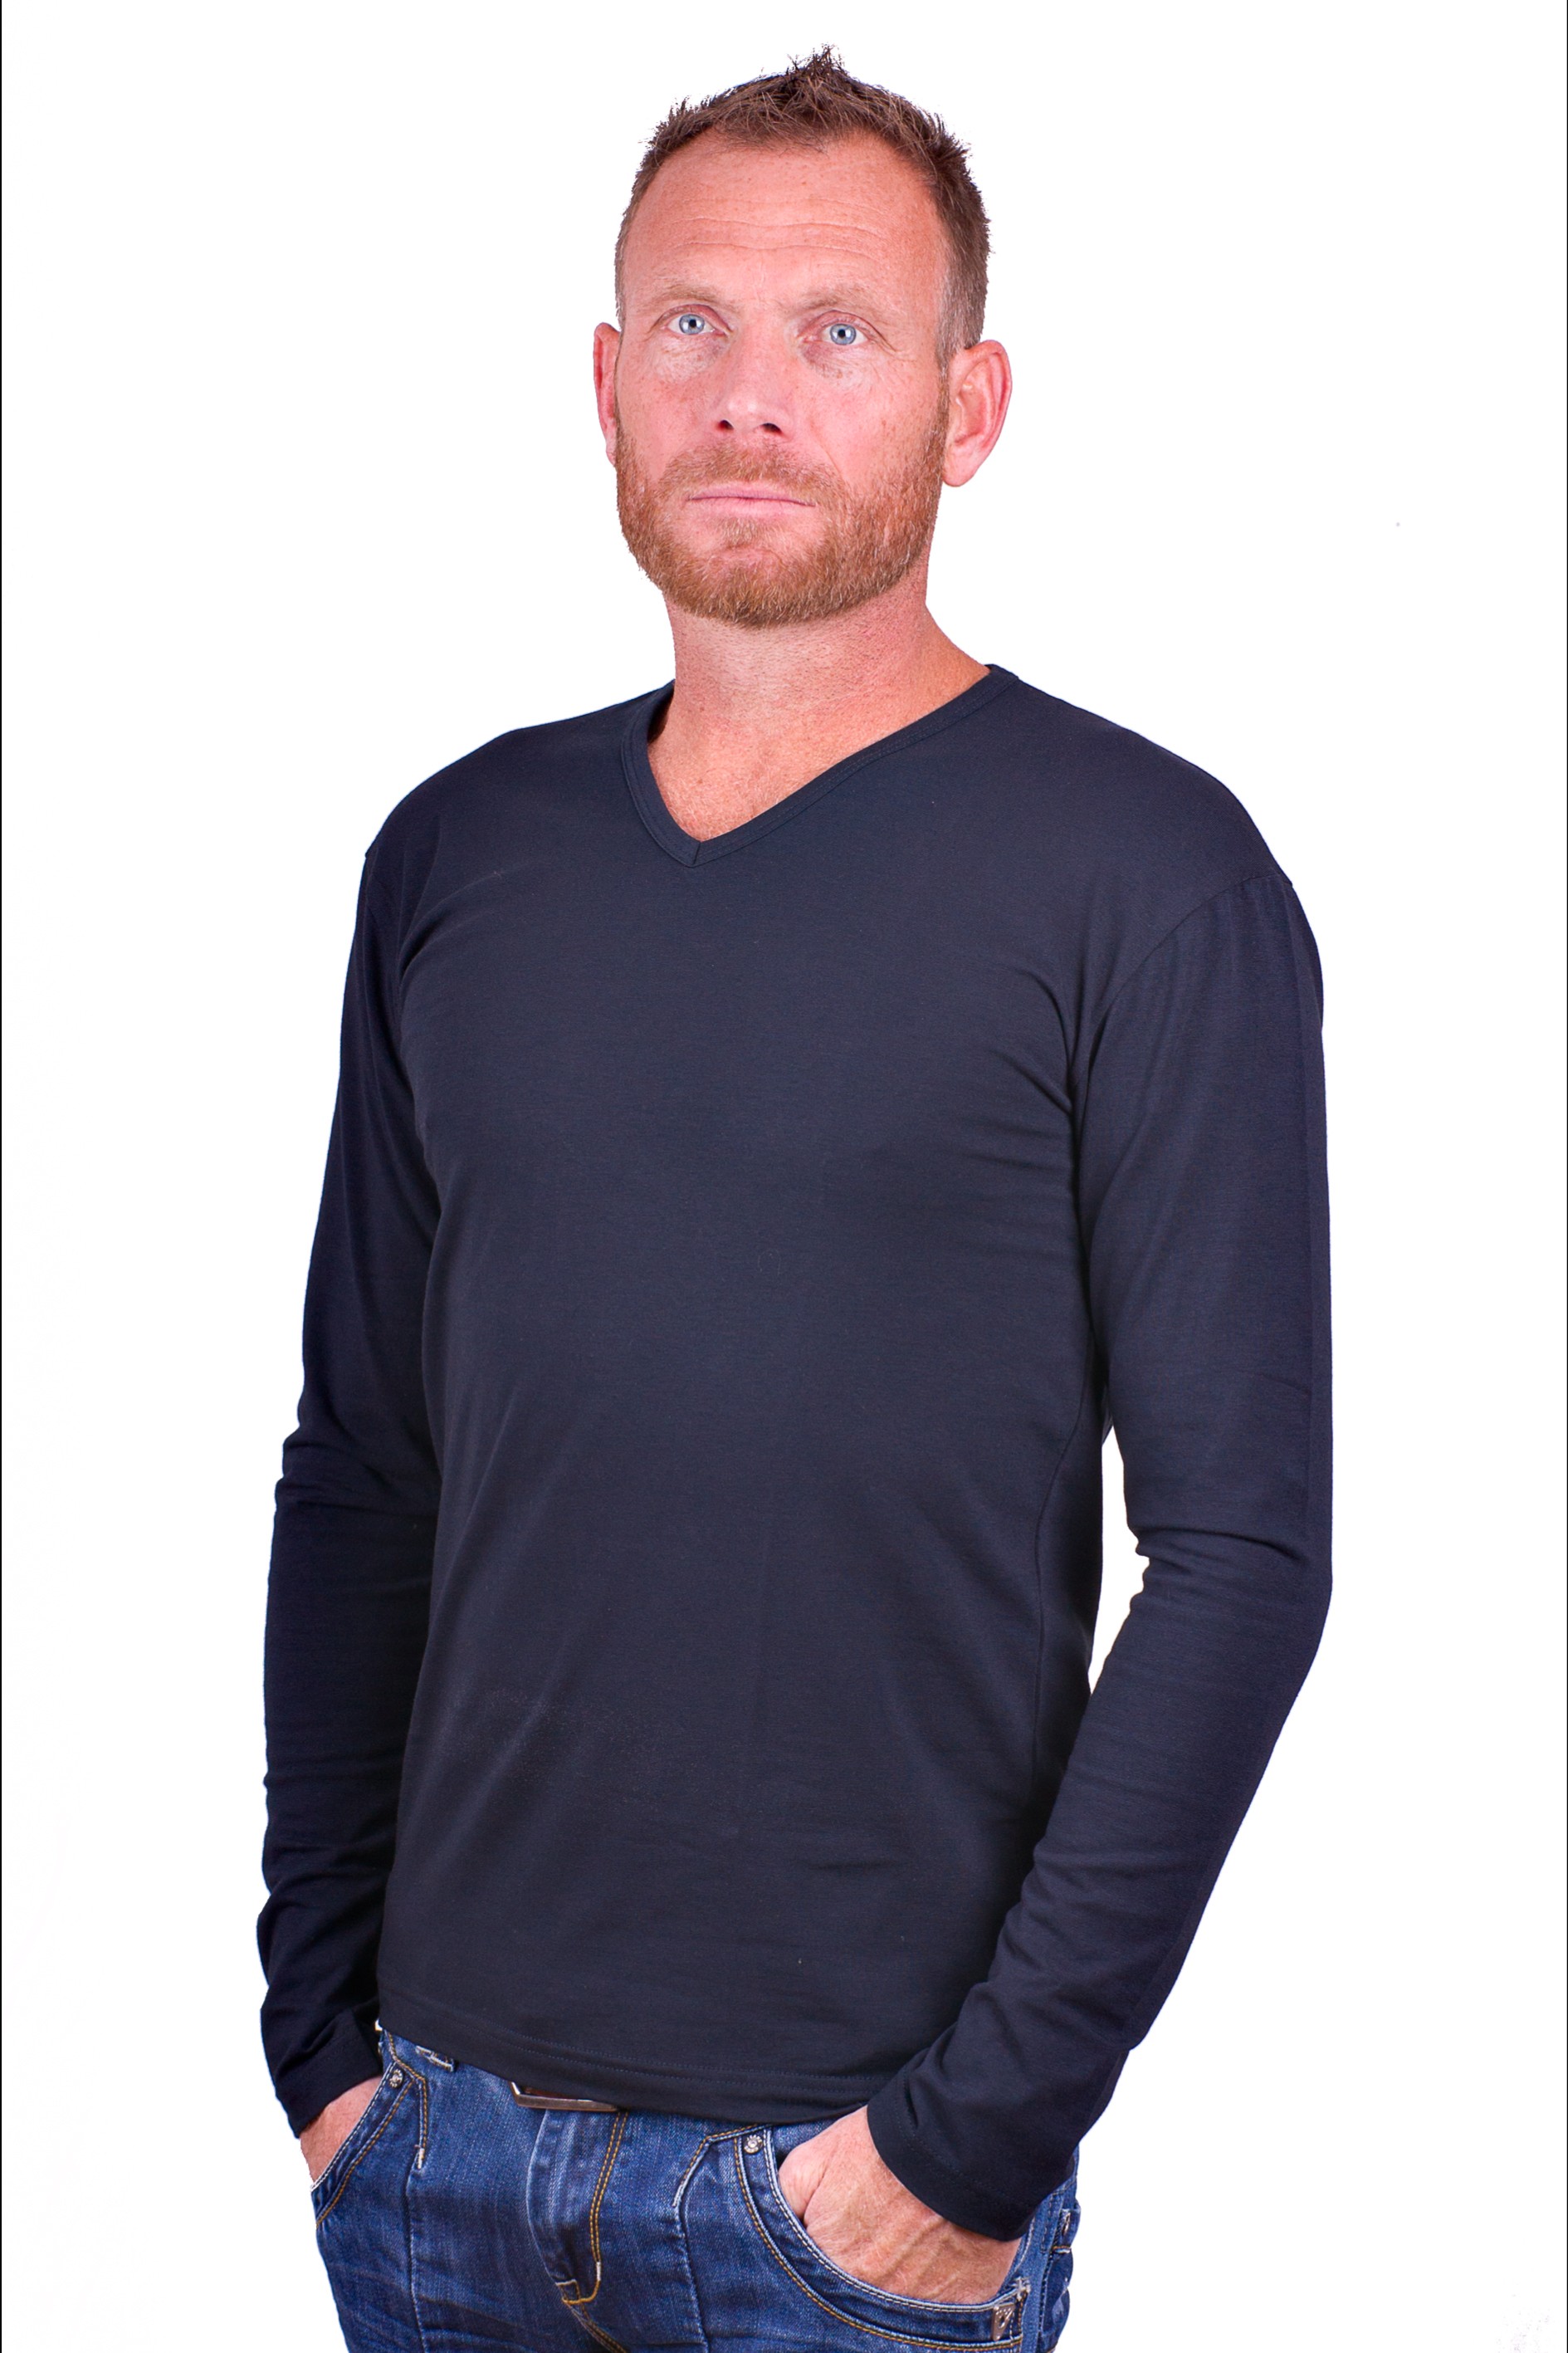 Misverstand vooroordeel doolhof Alan Red t-shirt Model Oslo (Longsleeve) Blue